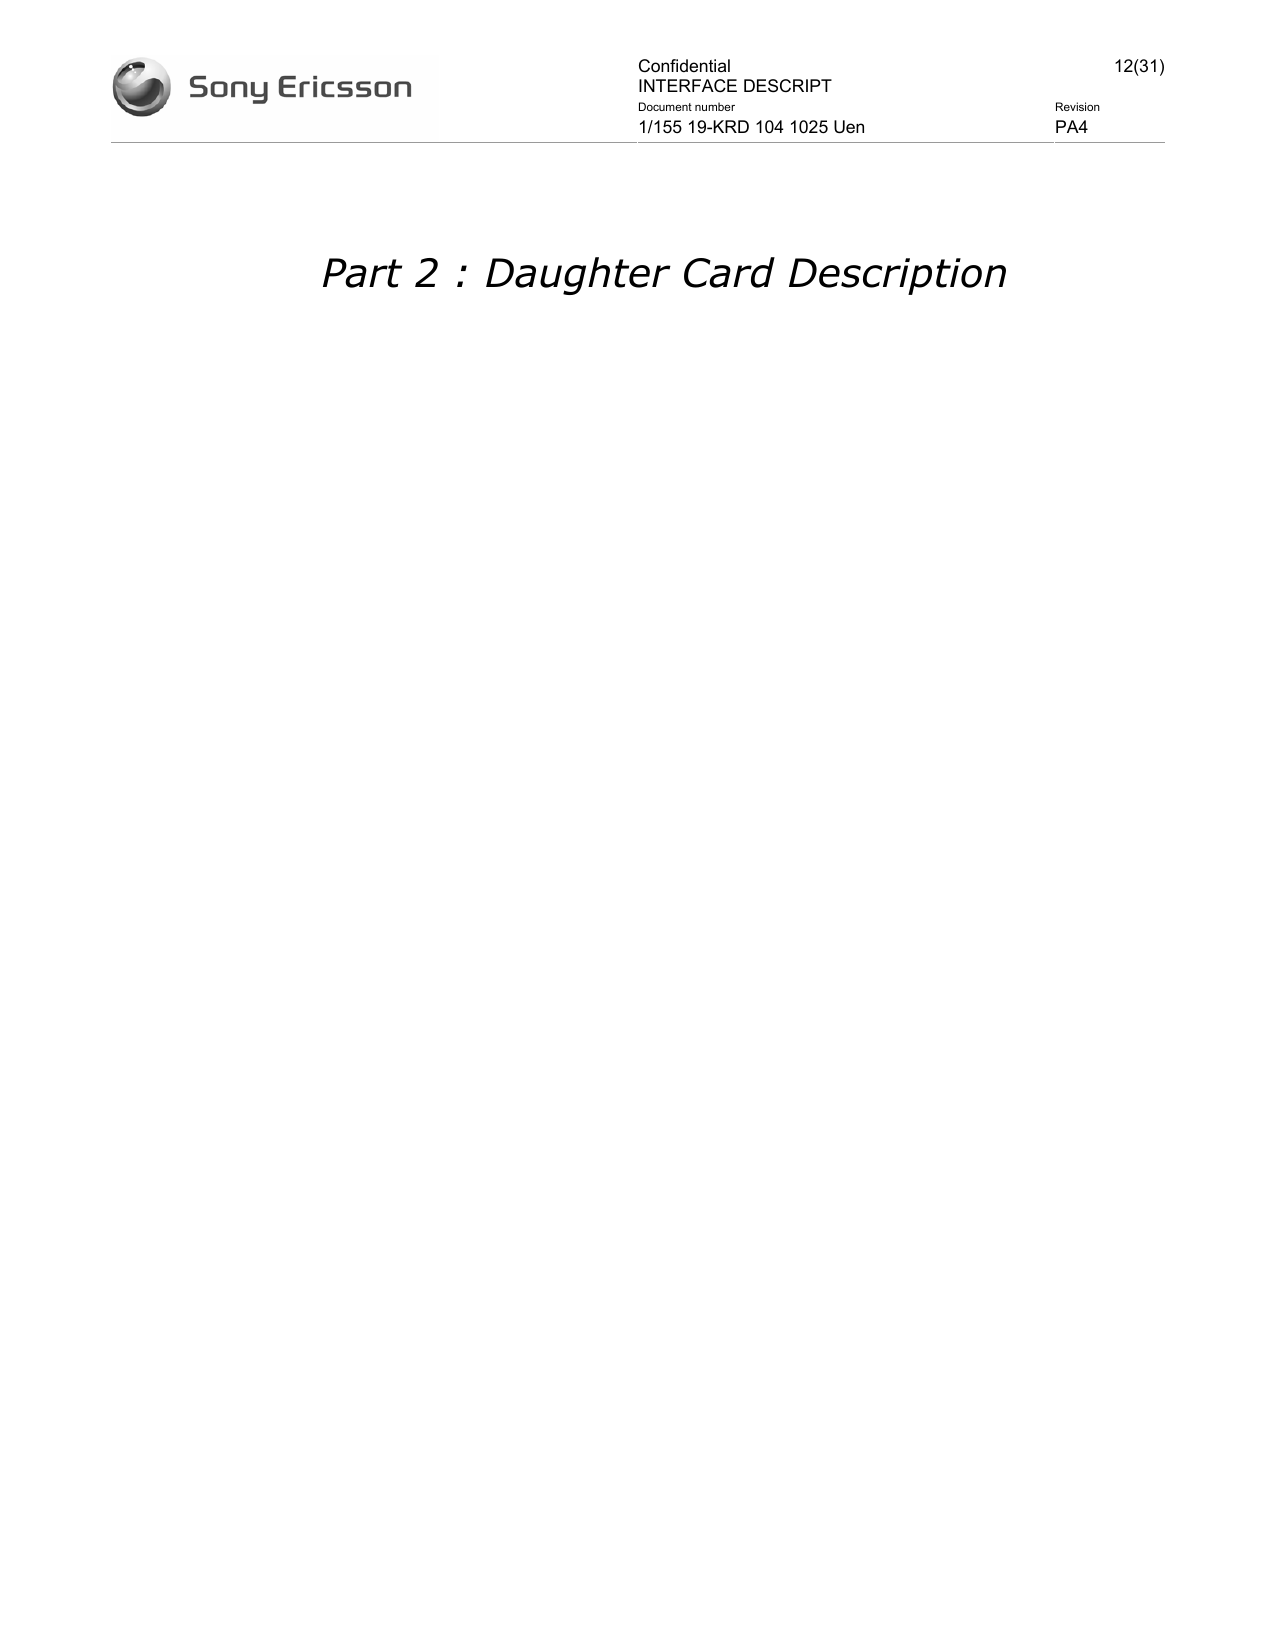 Confidential INTERFACE DESCRIPT 12(31)Document number  Revision 1/155 19-KRD 104 1025 Uen  PA4     Part 2 : Daughter Card Description 